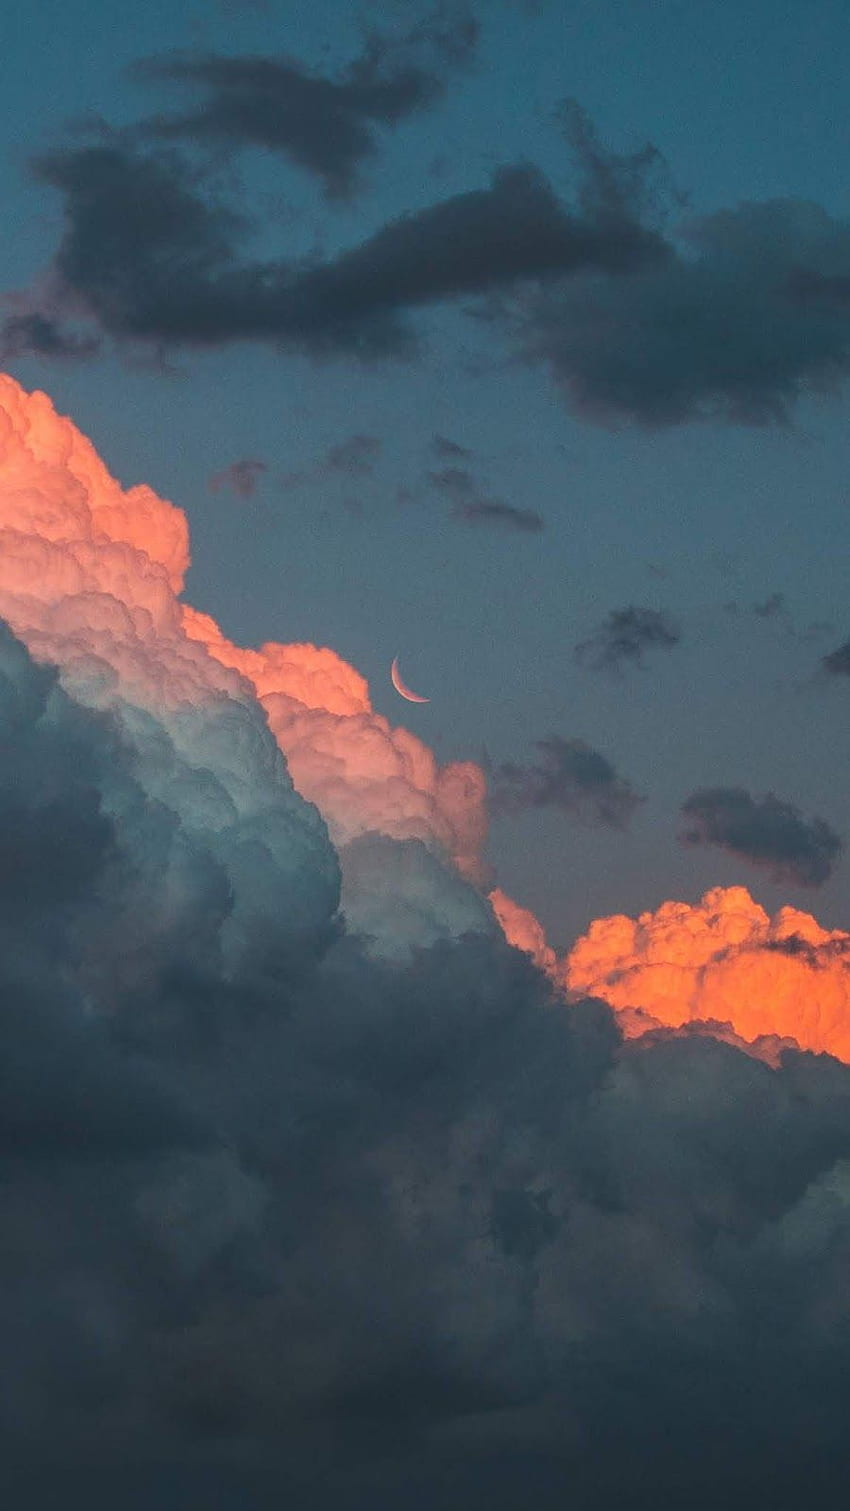 Nhìn lên bầu trời, ta sẽ thấy những đám mây hình thành từ các hạt nước, tạo nên những hình dáng độc đáo và đẹp mắt. Hãy cùng chiêm ngưỡng bức ảnh về mây để đắm chìm trong không gian thơ mộng của thiên nhiên.